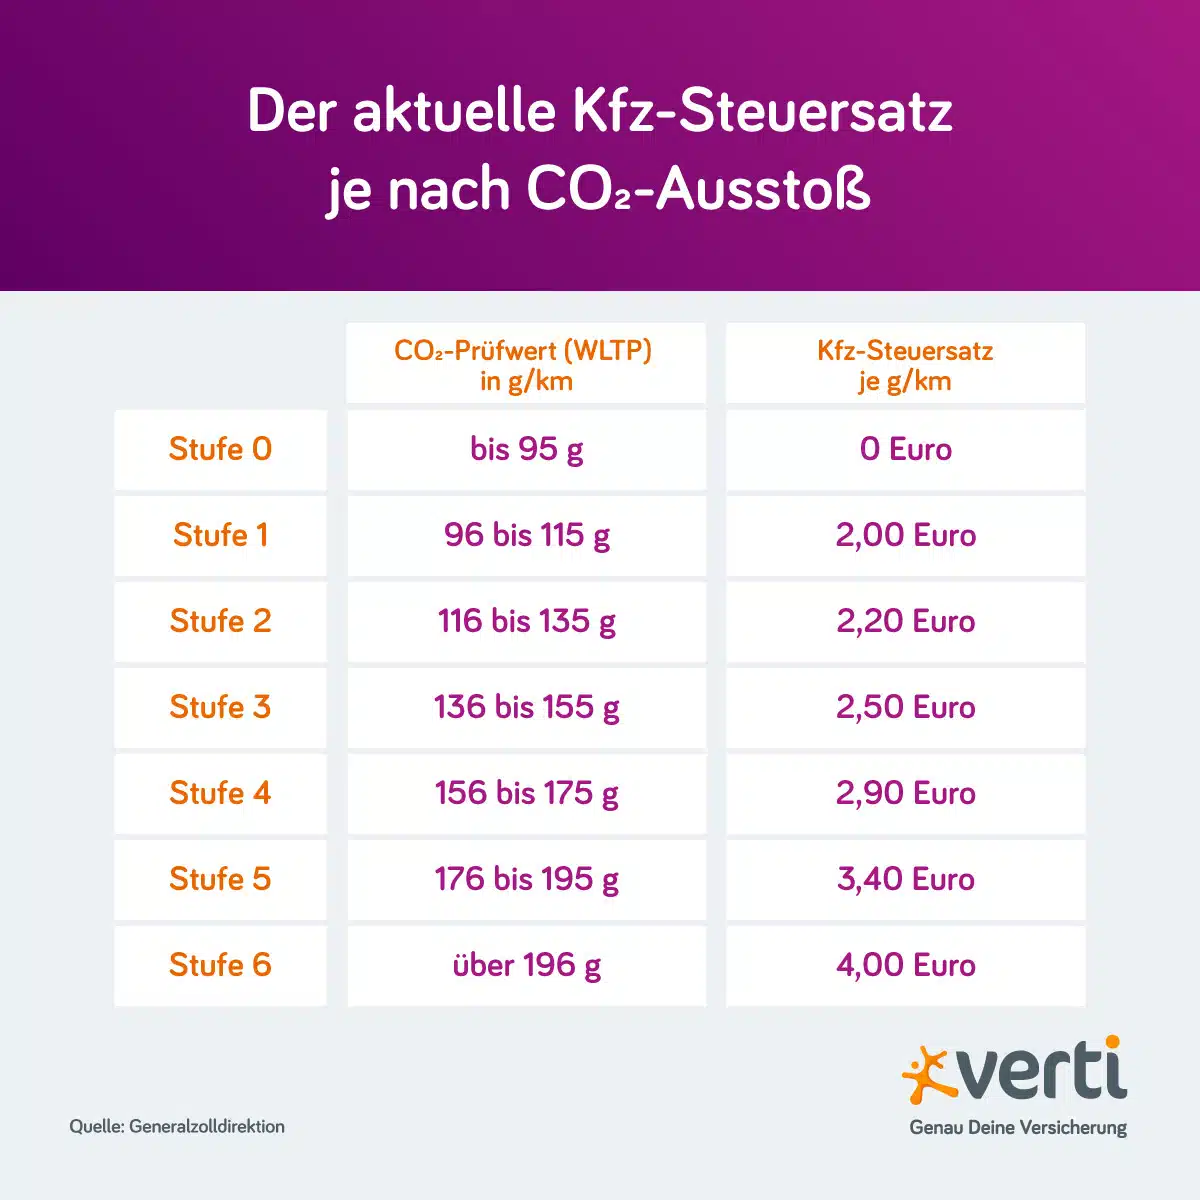 Kfz-Steuersatz nach CO2-Ausstoß